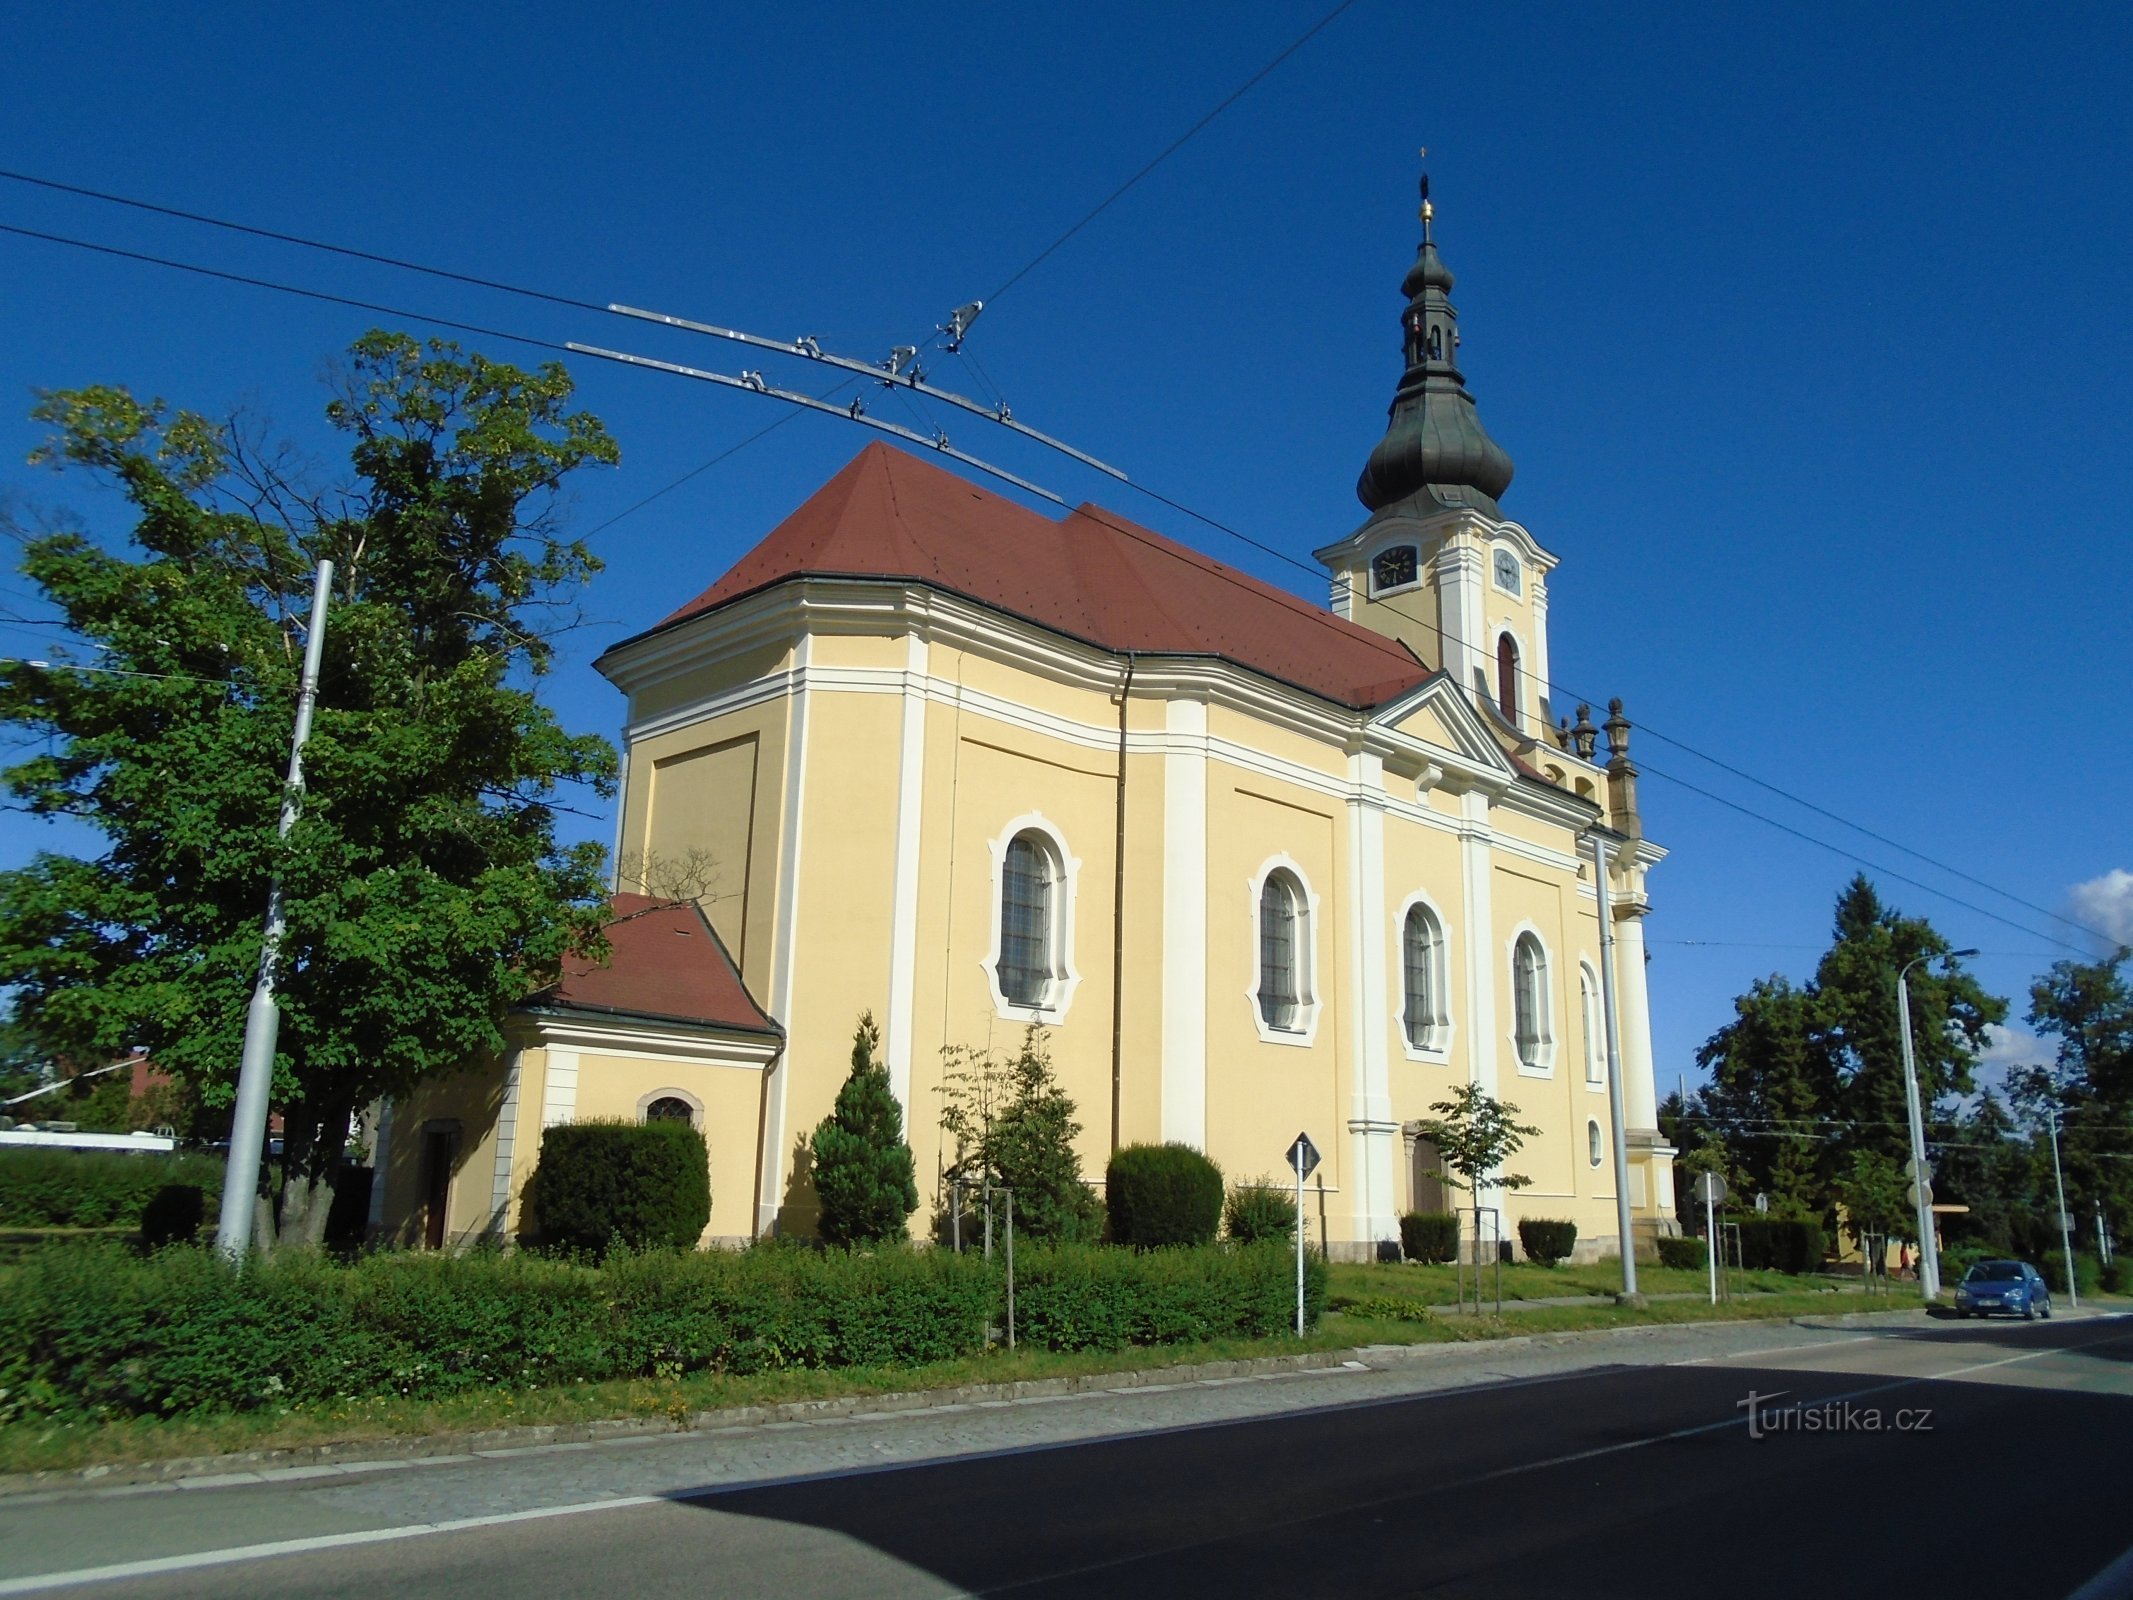 crkva sv. Antonína, Hradec Králové, 1.7.2018. srpnja XNUMX.)